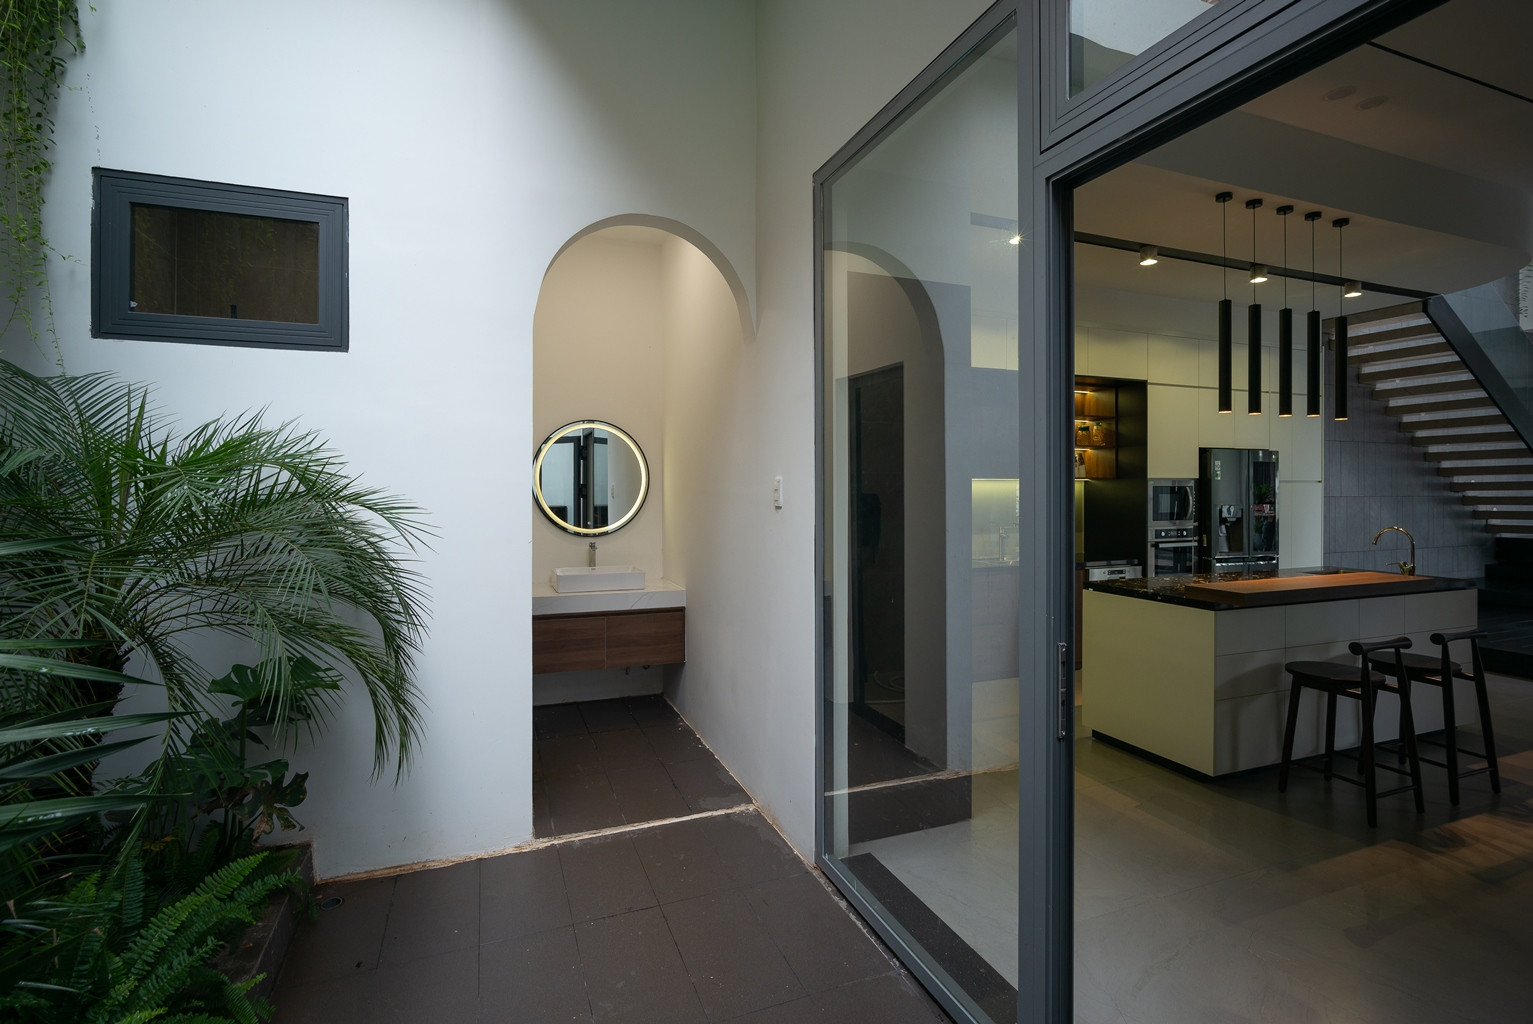 Khu vệ sinh ở tầng 1 được đặt cuối nhà để tách biệt với không gian sinh hoạt, cạnh lối vào được trồng cây xanh.